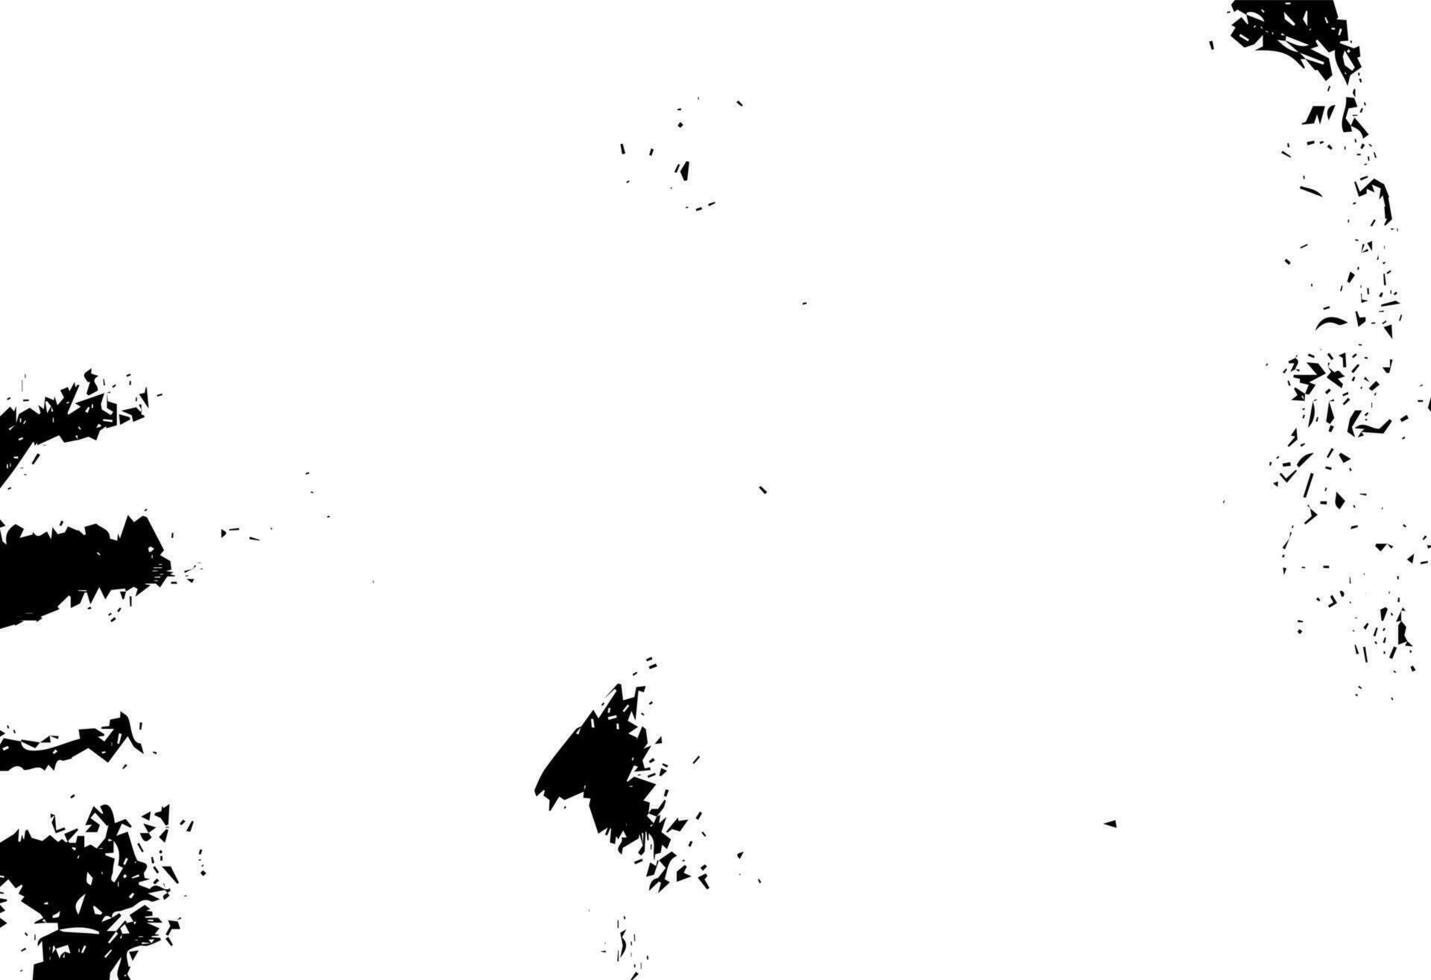 rustikale Grunge-Vektortextur mit Korn und Flecken. abstrakter Geräuschhintergrund. verwitterte Oberfläche. vektor